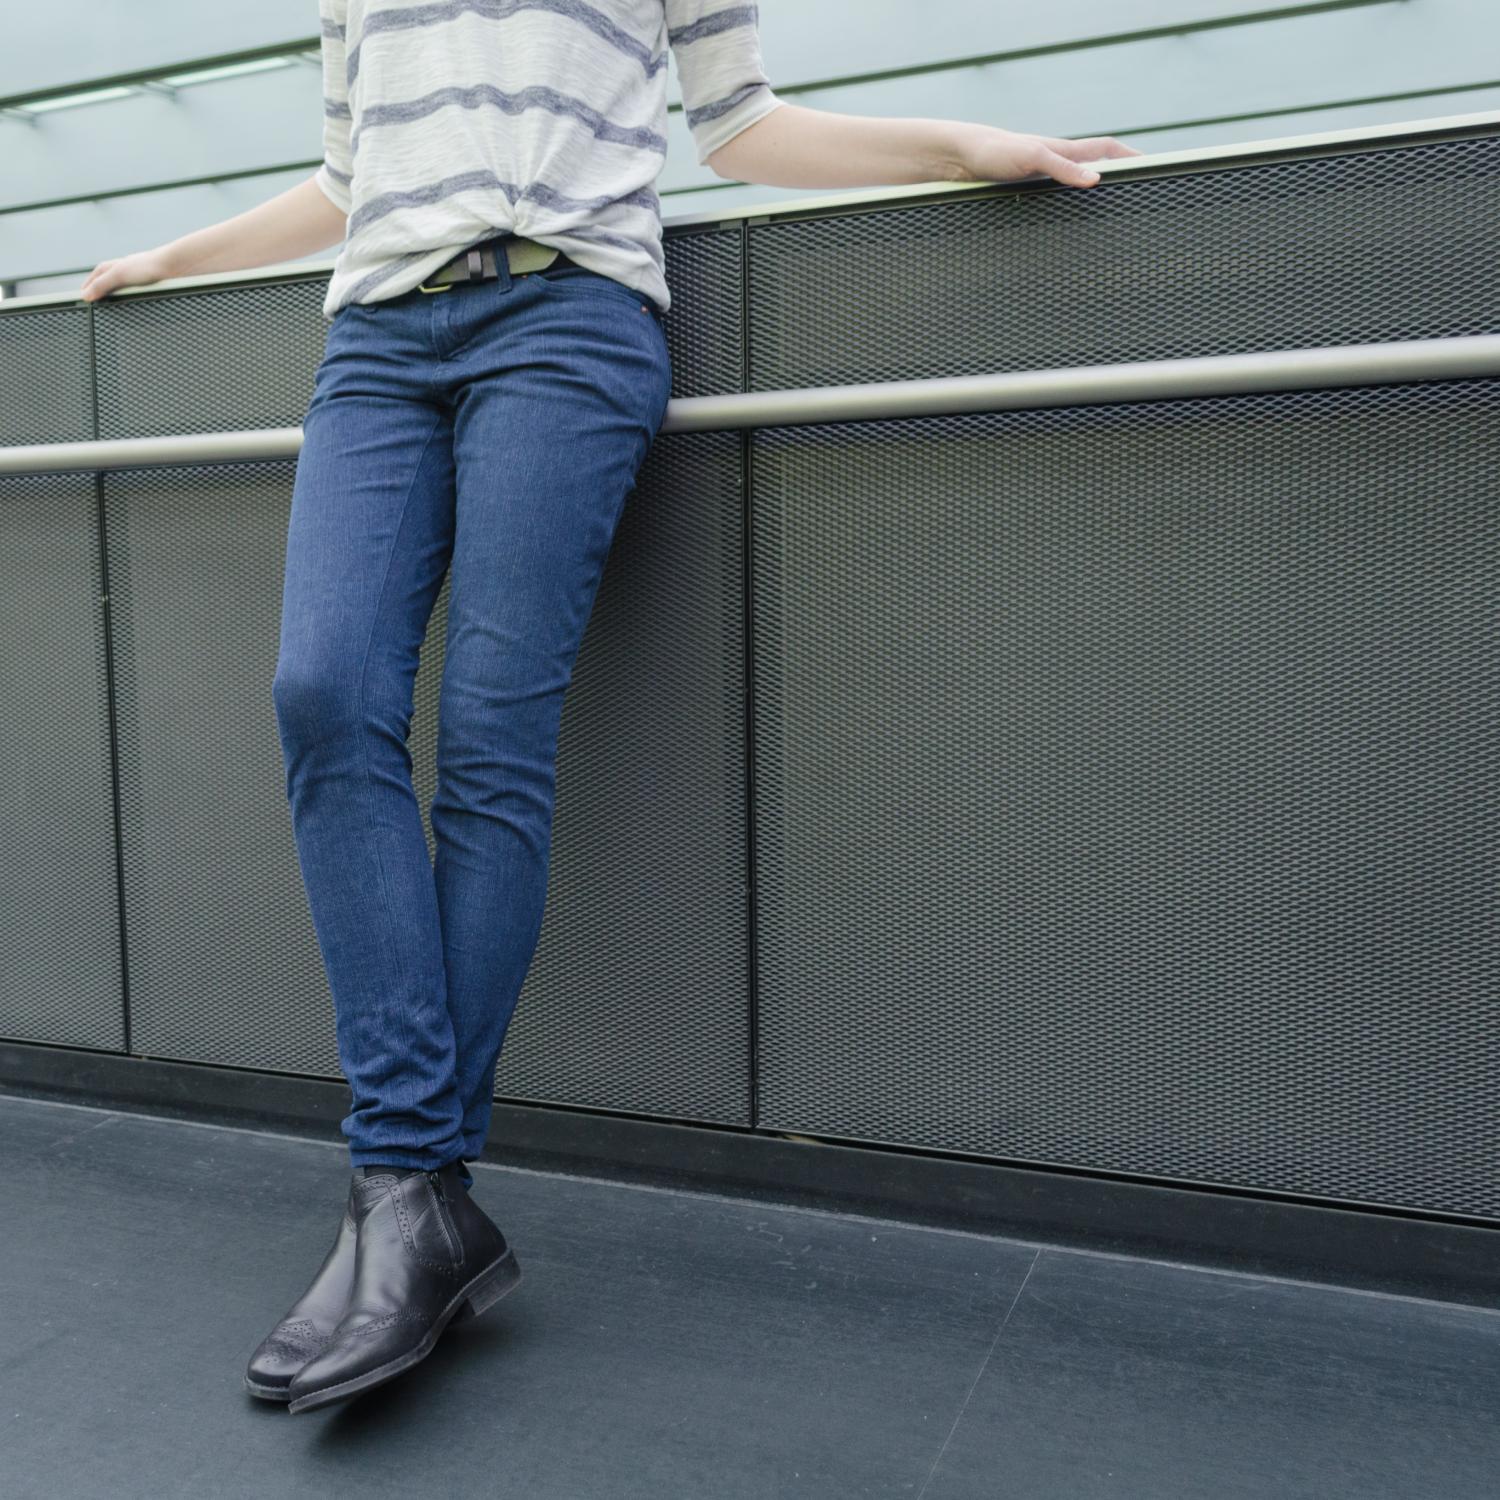 Jeans nähen, Schnittmuster Ginger Jeans von Closet Case Patterns, low-rise und skinny leg